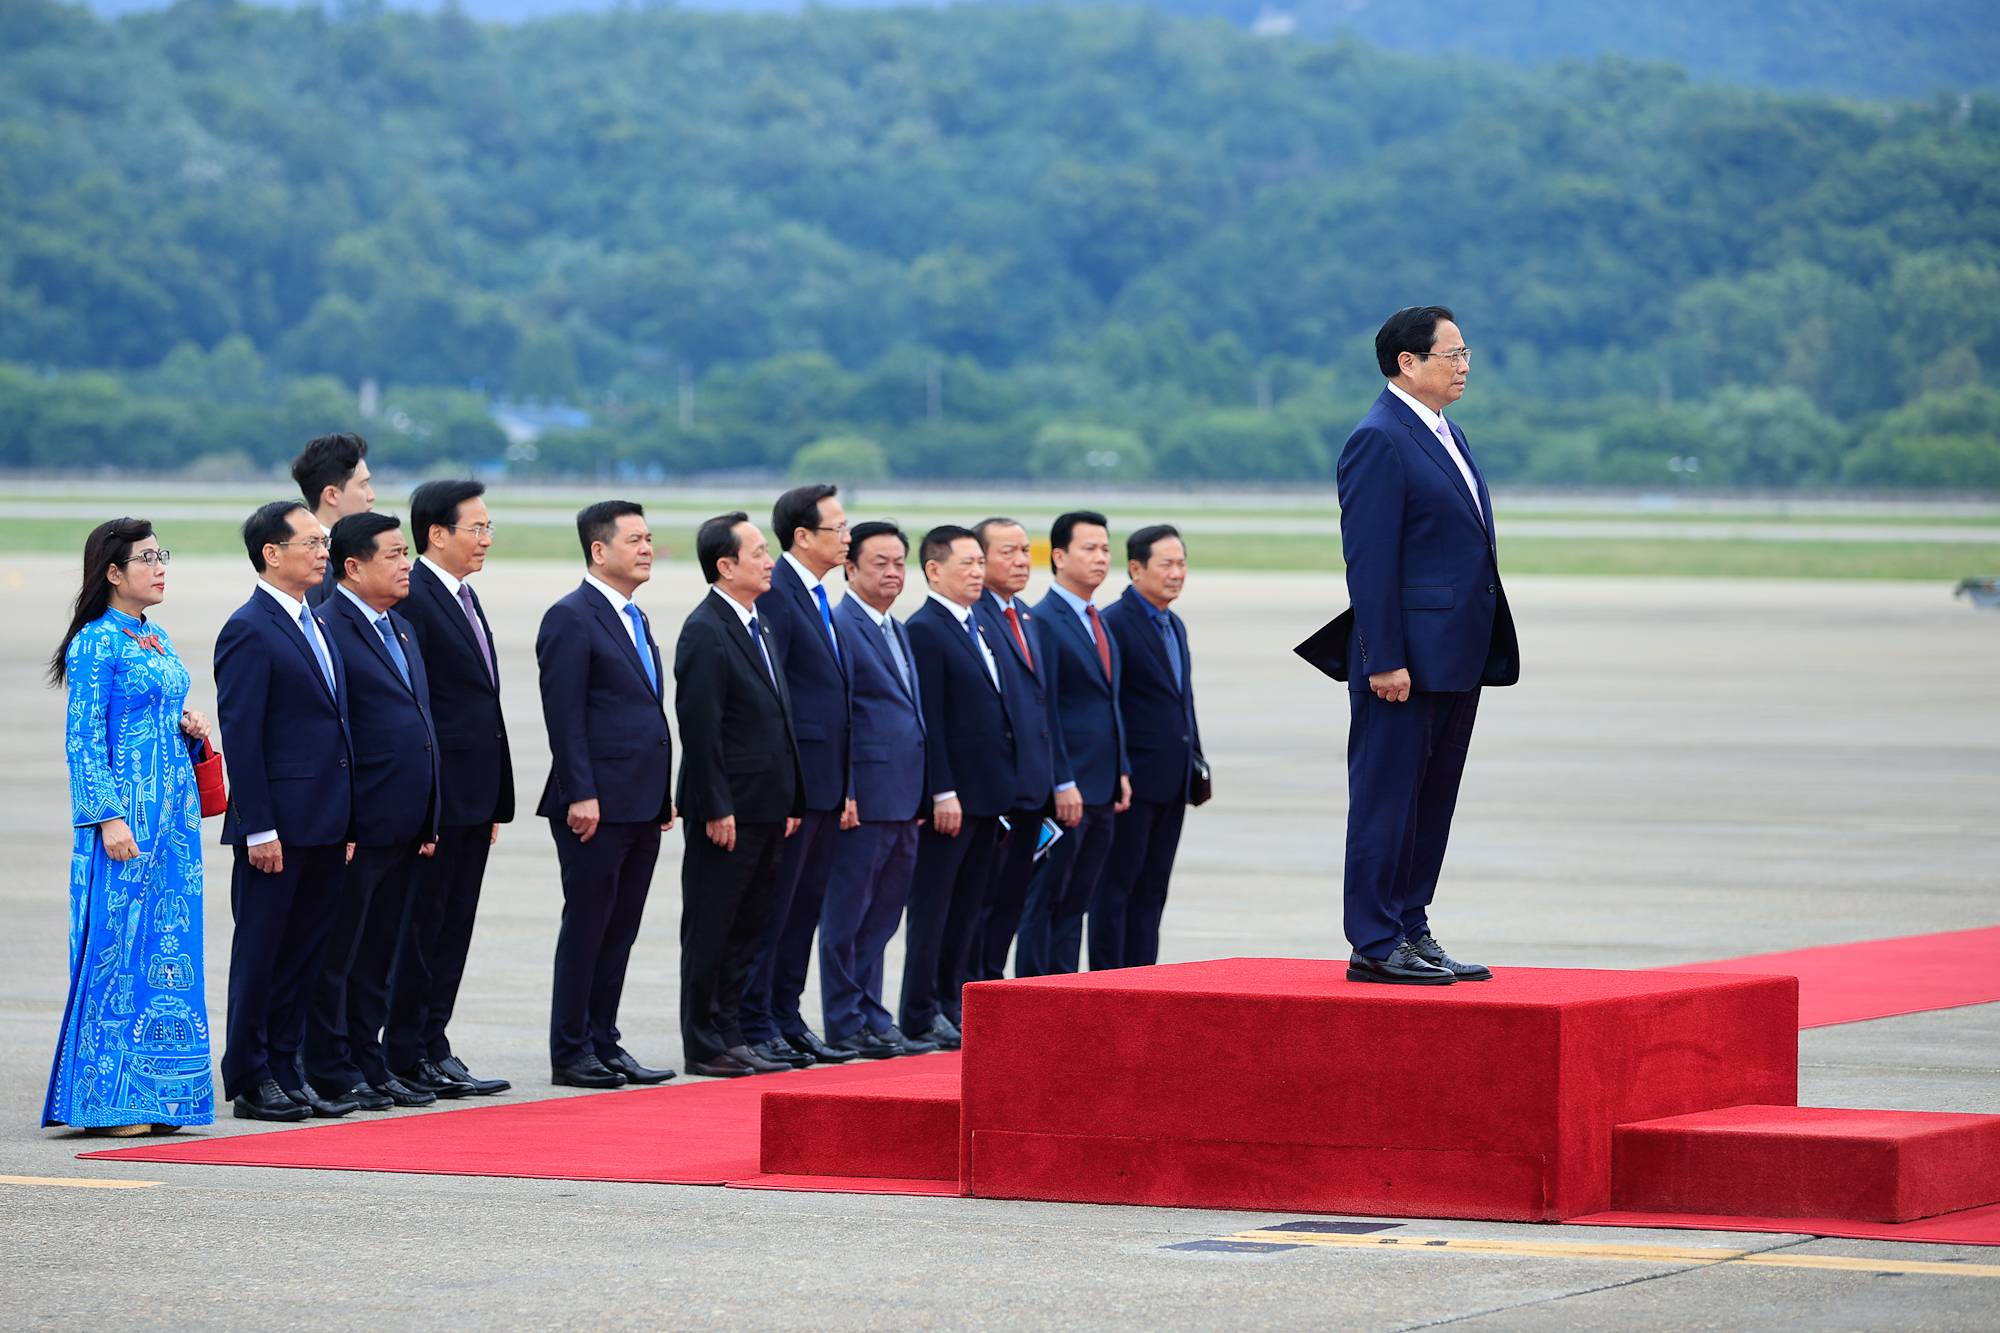 Lễ đón chính thức Thủ tướng Chính phủ Phạm Minh Chính và Phu nhân cùng Đoàn đại biểu Việt Nam được tổ chức trang trọng tại sân bay quân sự Seongnam - Ảnh: VGP/Nhật Bắc